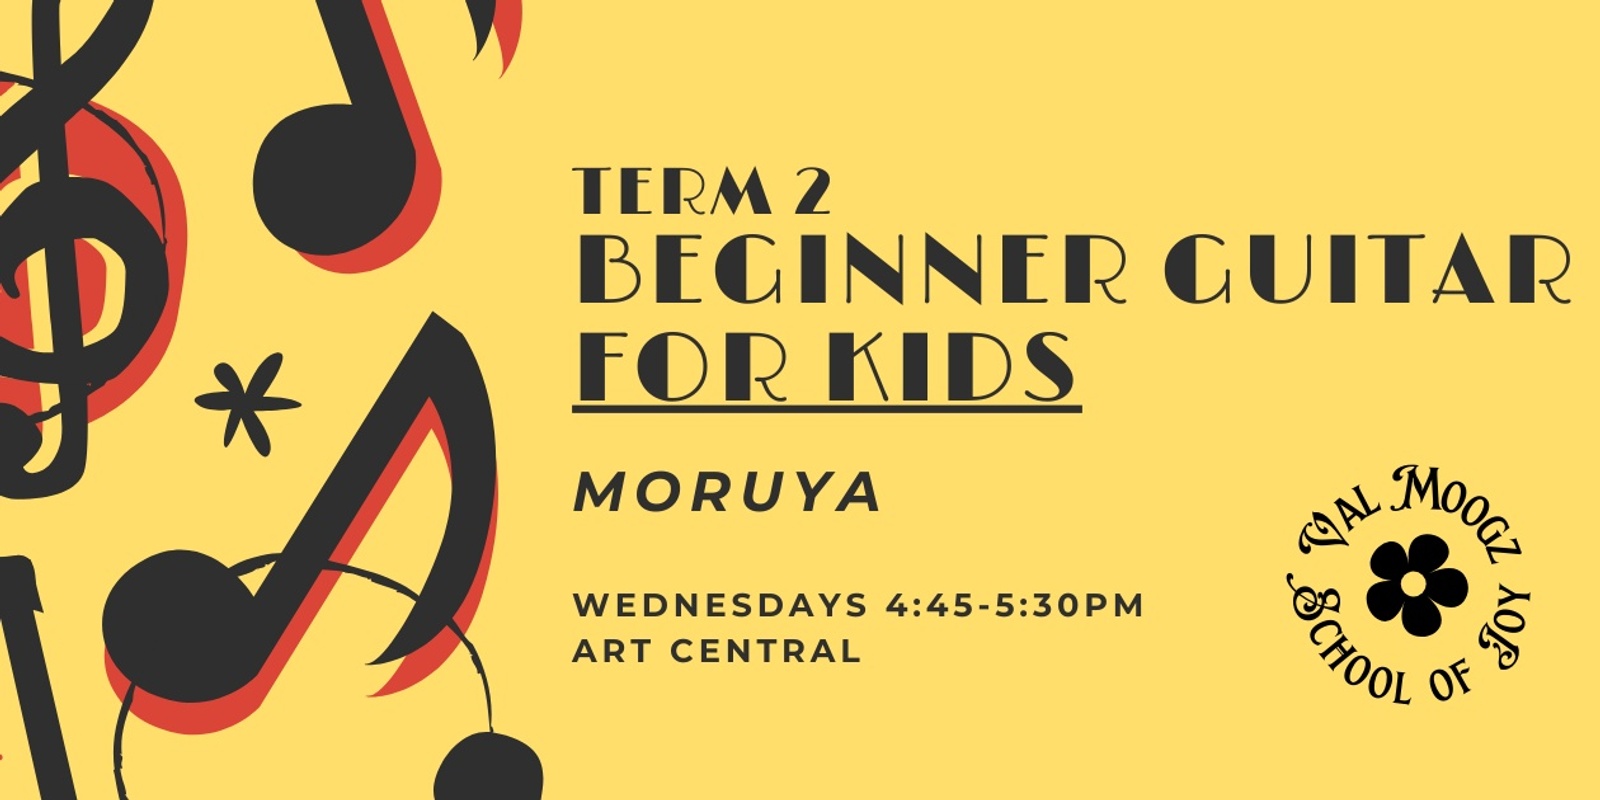 Banner image for Term 2 - Beginner Guitar for Kids - Moruya